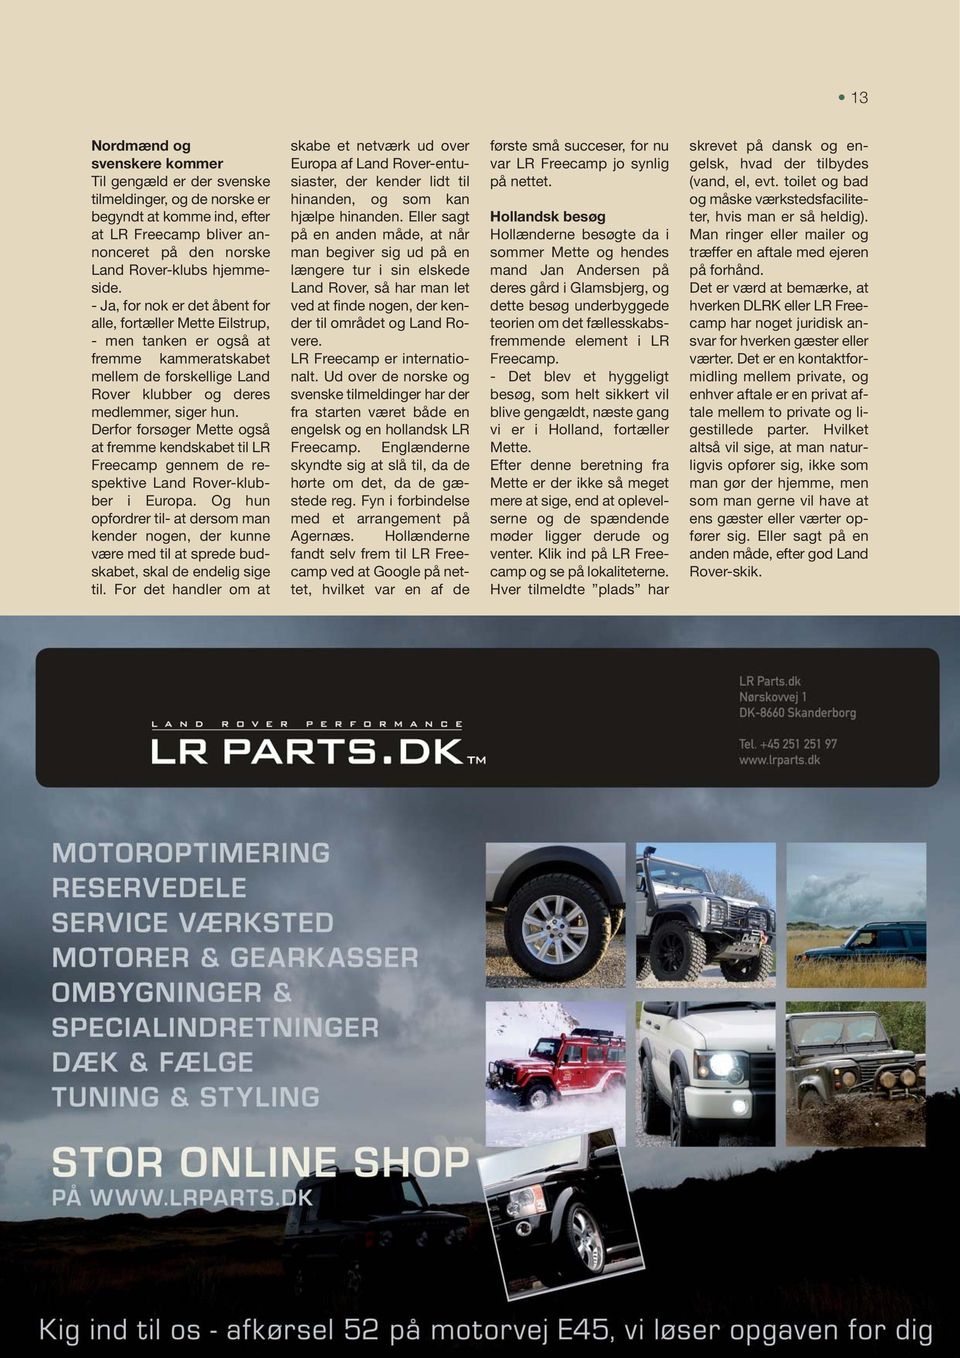 Derfor forsøger Mette også at fremme kendskabet til LR Freecamp gennem de respektive Land Rover-klubber i Europa.